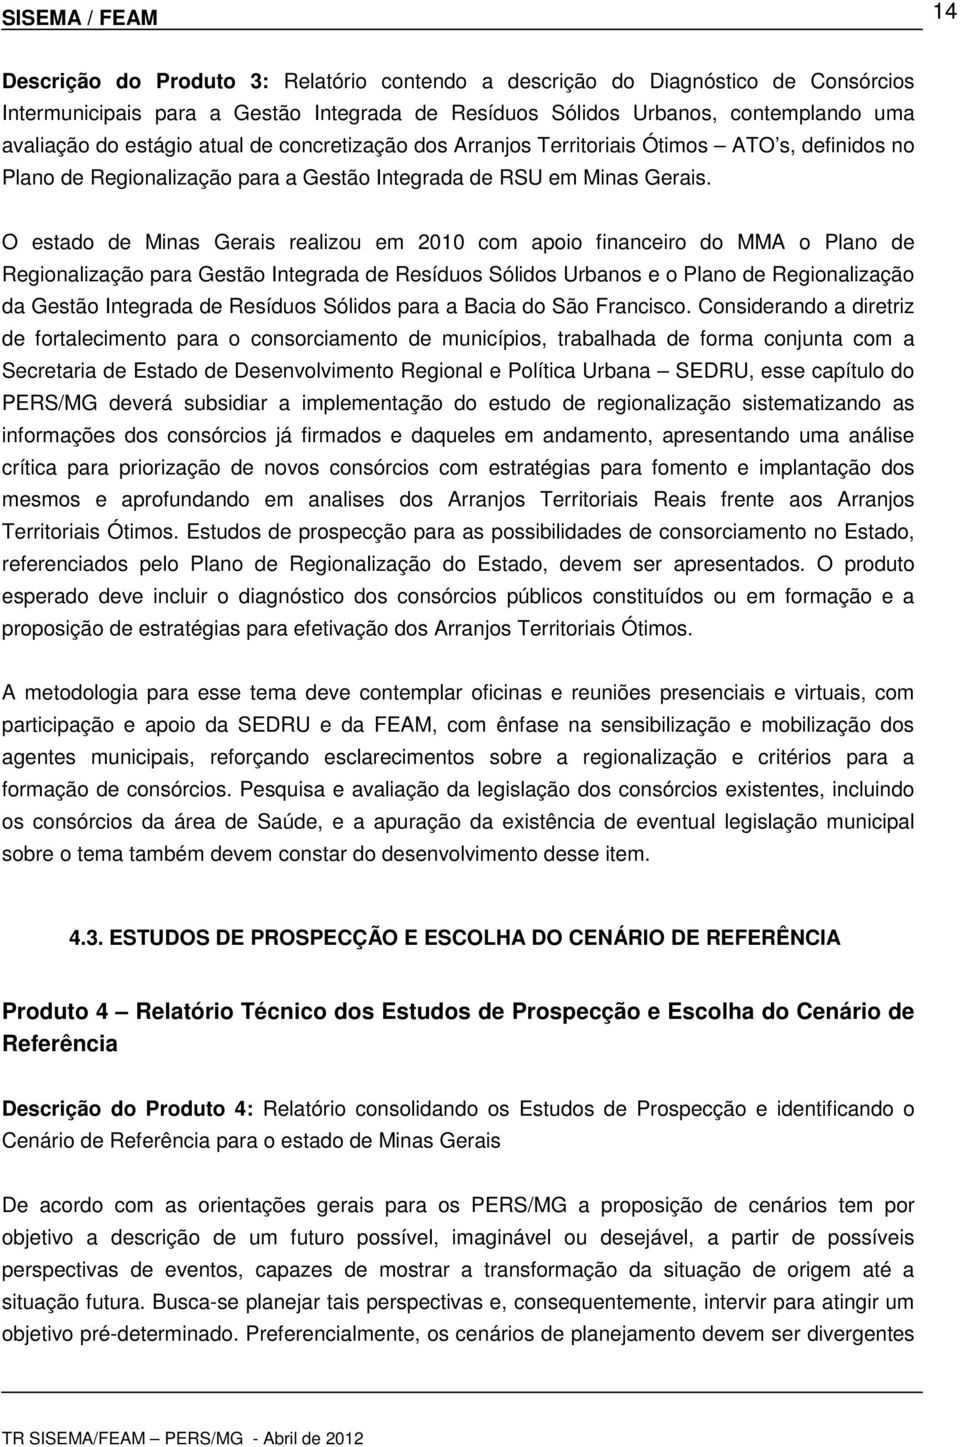 O estado de Minas Gerais realizou em 2010 com apoio financeiro do MMA o Plano de Regionalização para Gestão Integrada de Resíduos Sólidos Urbanos e o Plano de Regionalização da Gestão Integrada de